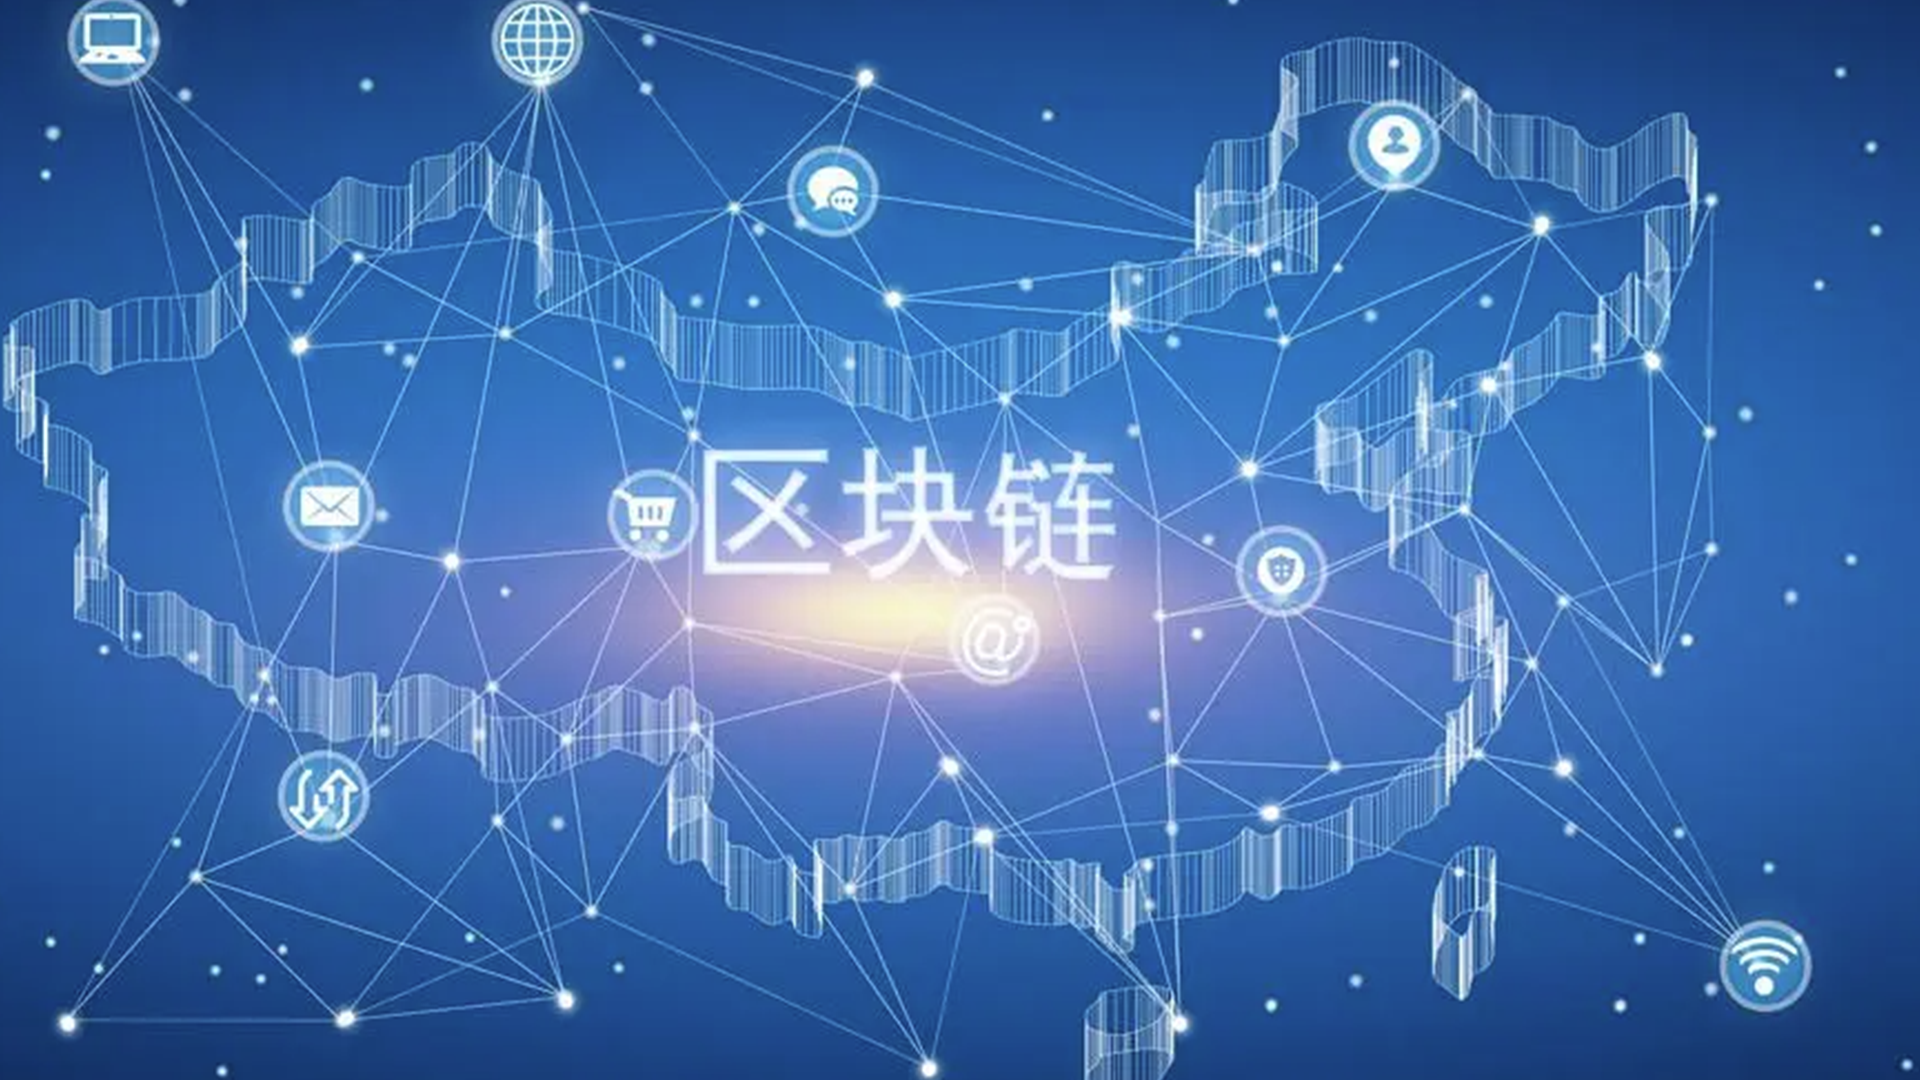 郑州正式成为全球区块链服务网络节点城市